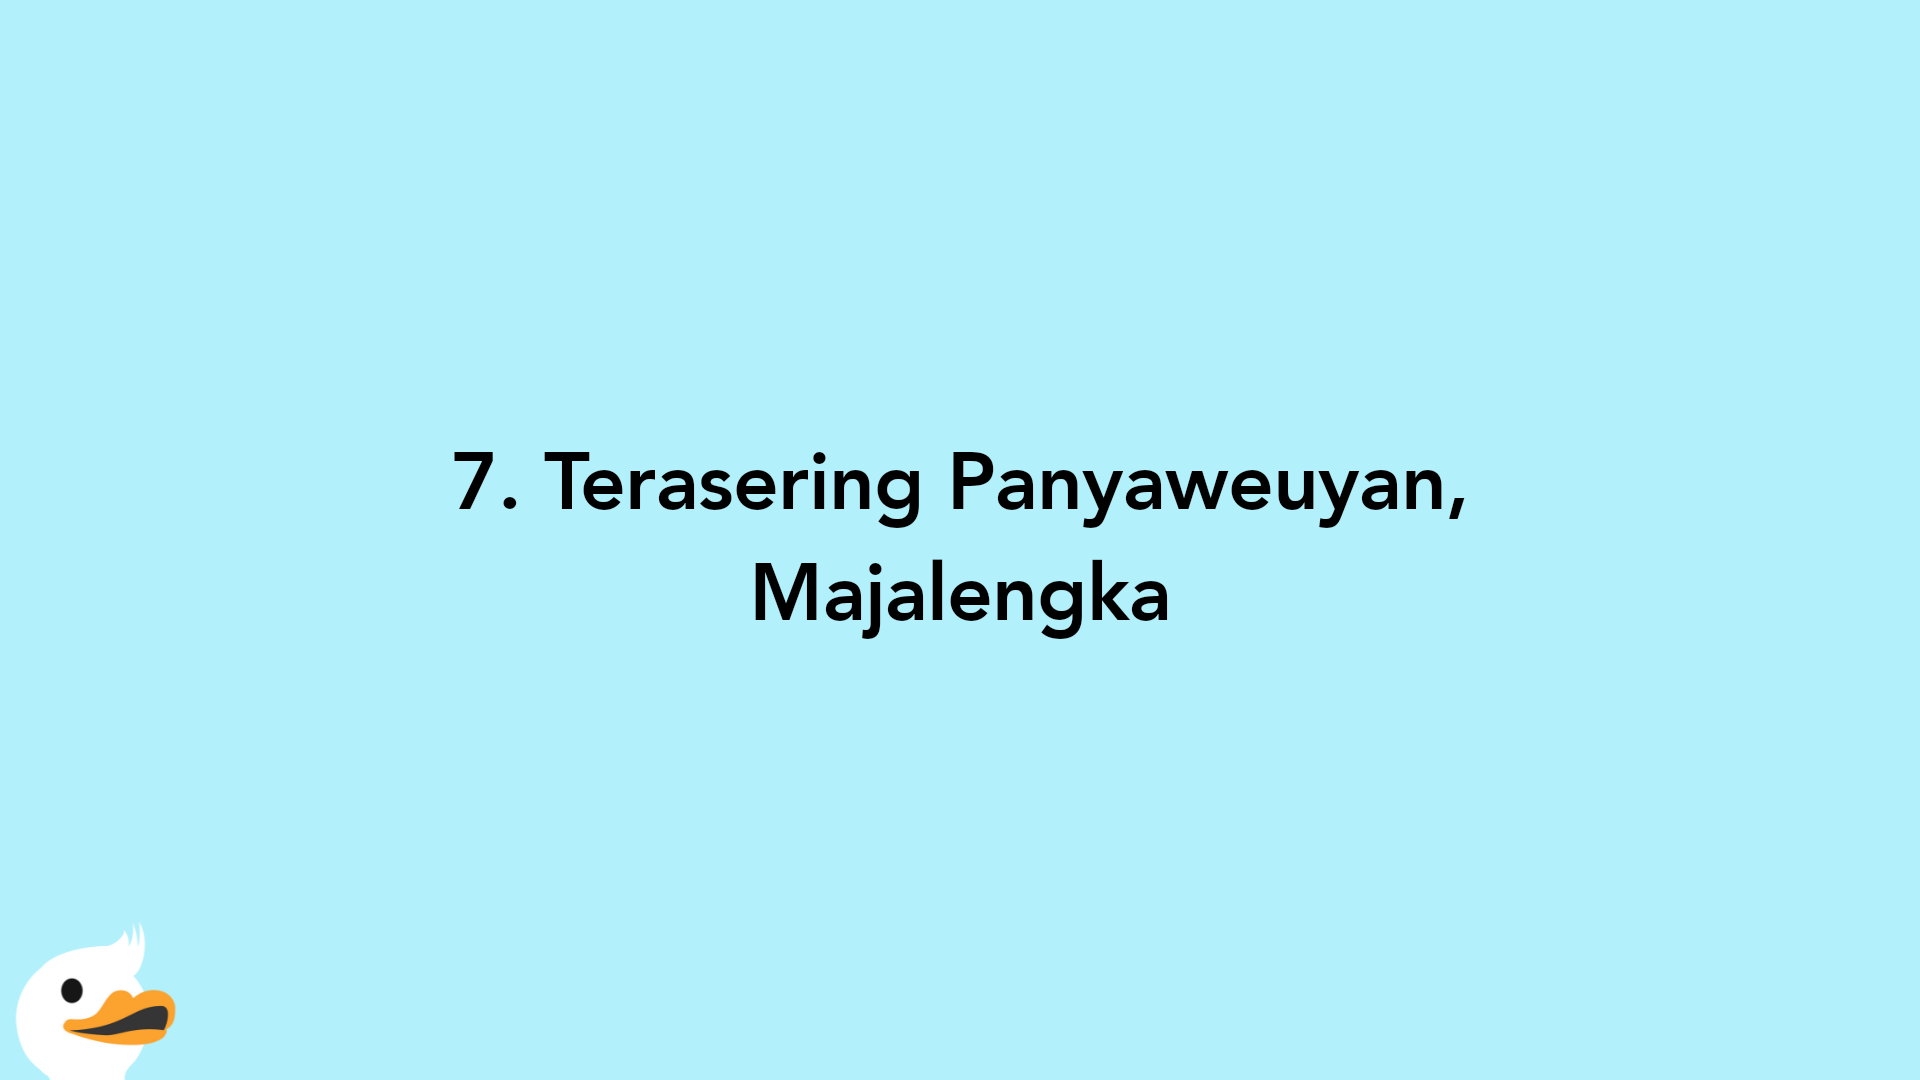 7. Terasering Panyaweuyan, Majalengka